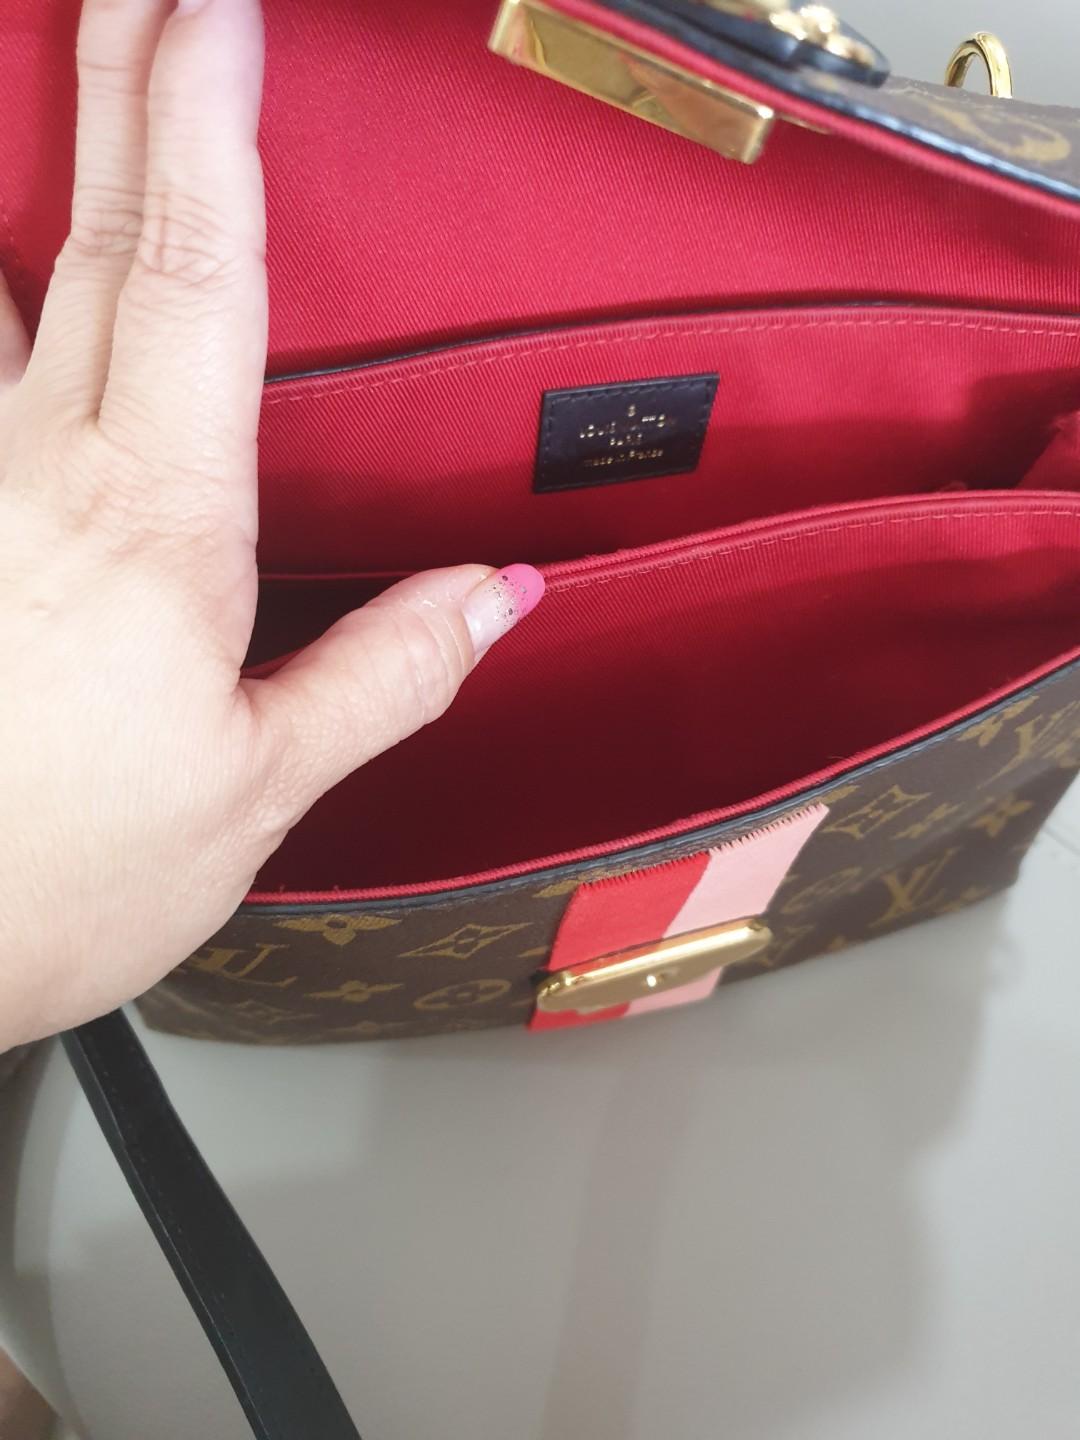 Túi xách Louis Vuitton Georges BB siêu cấp màu đen size 27.5 cm